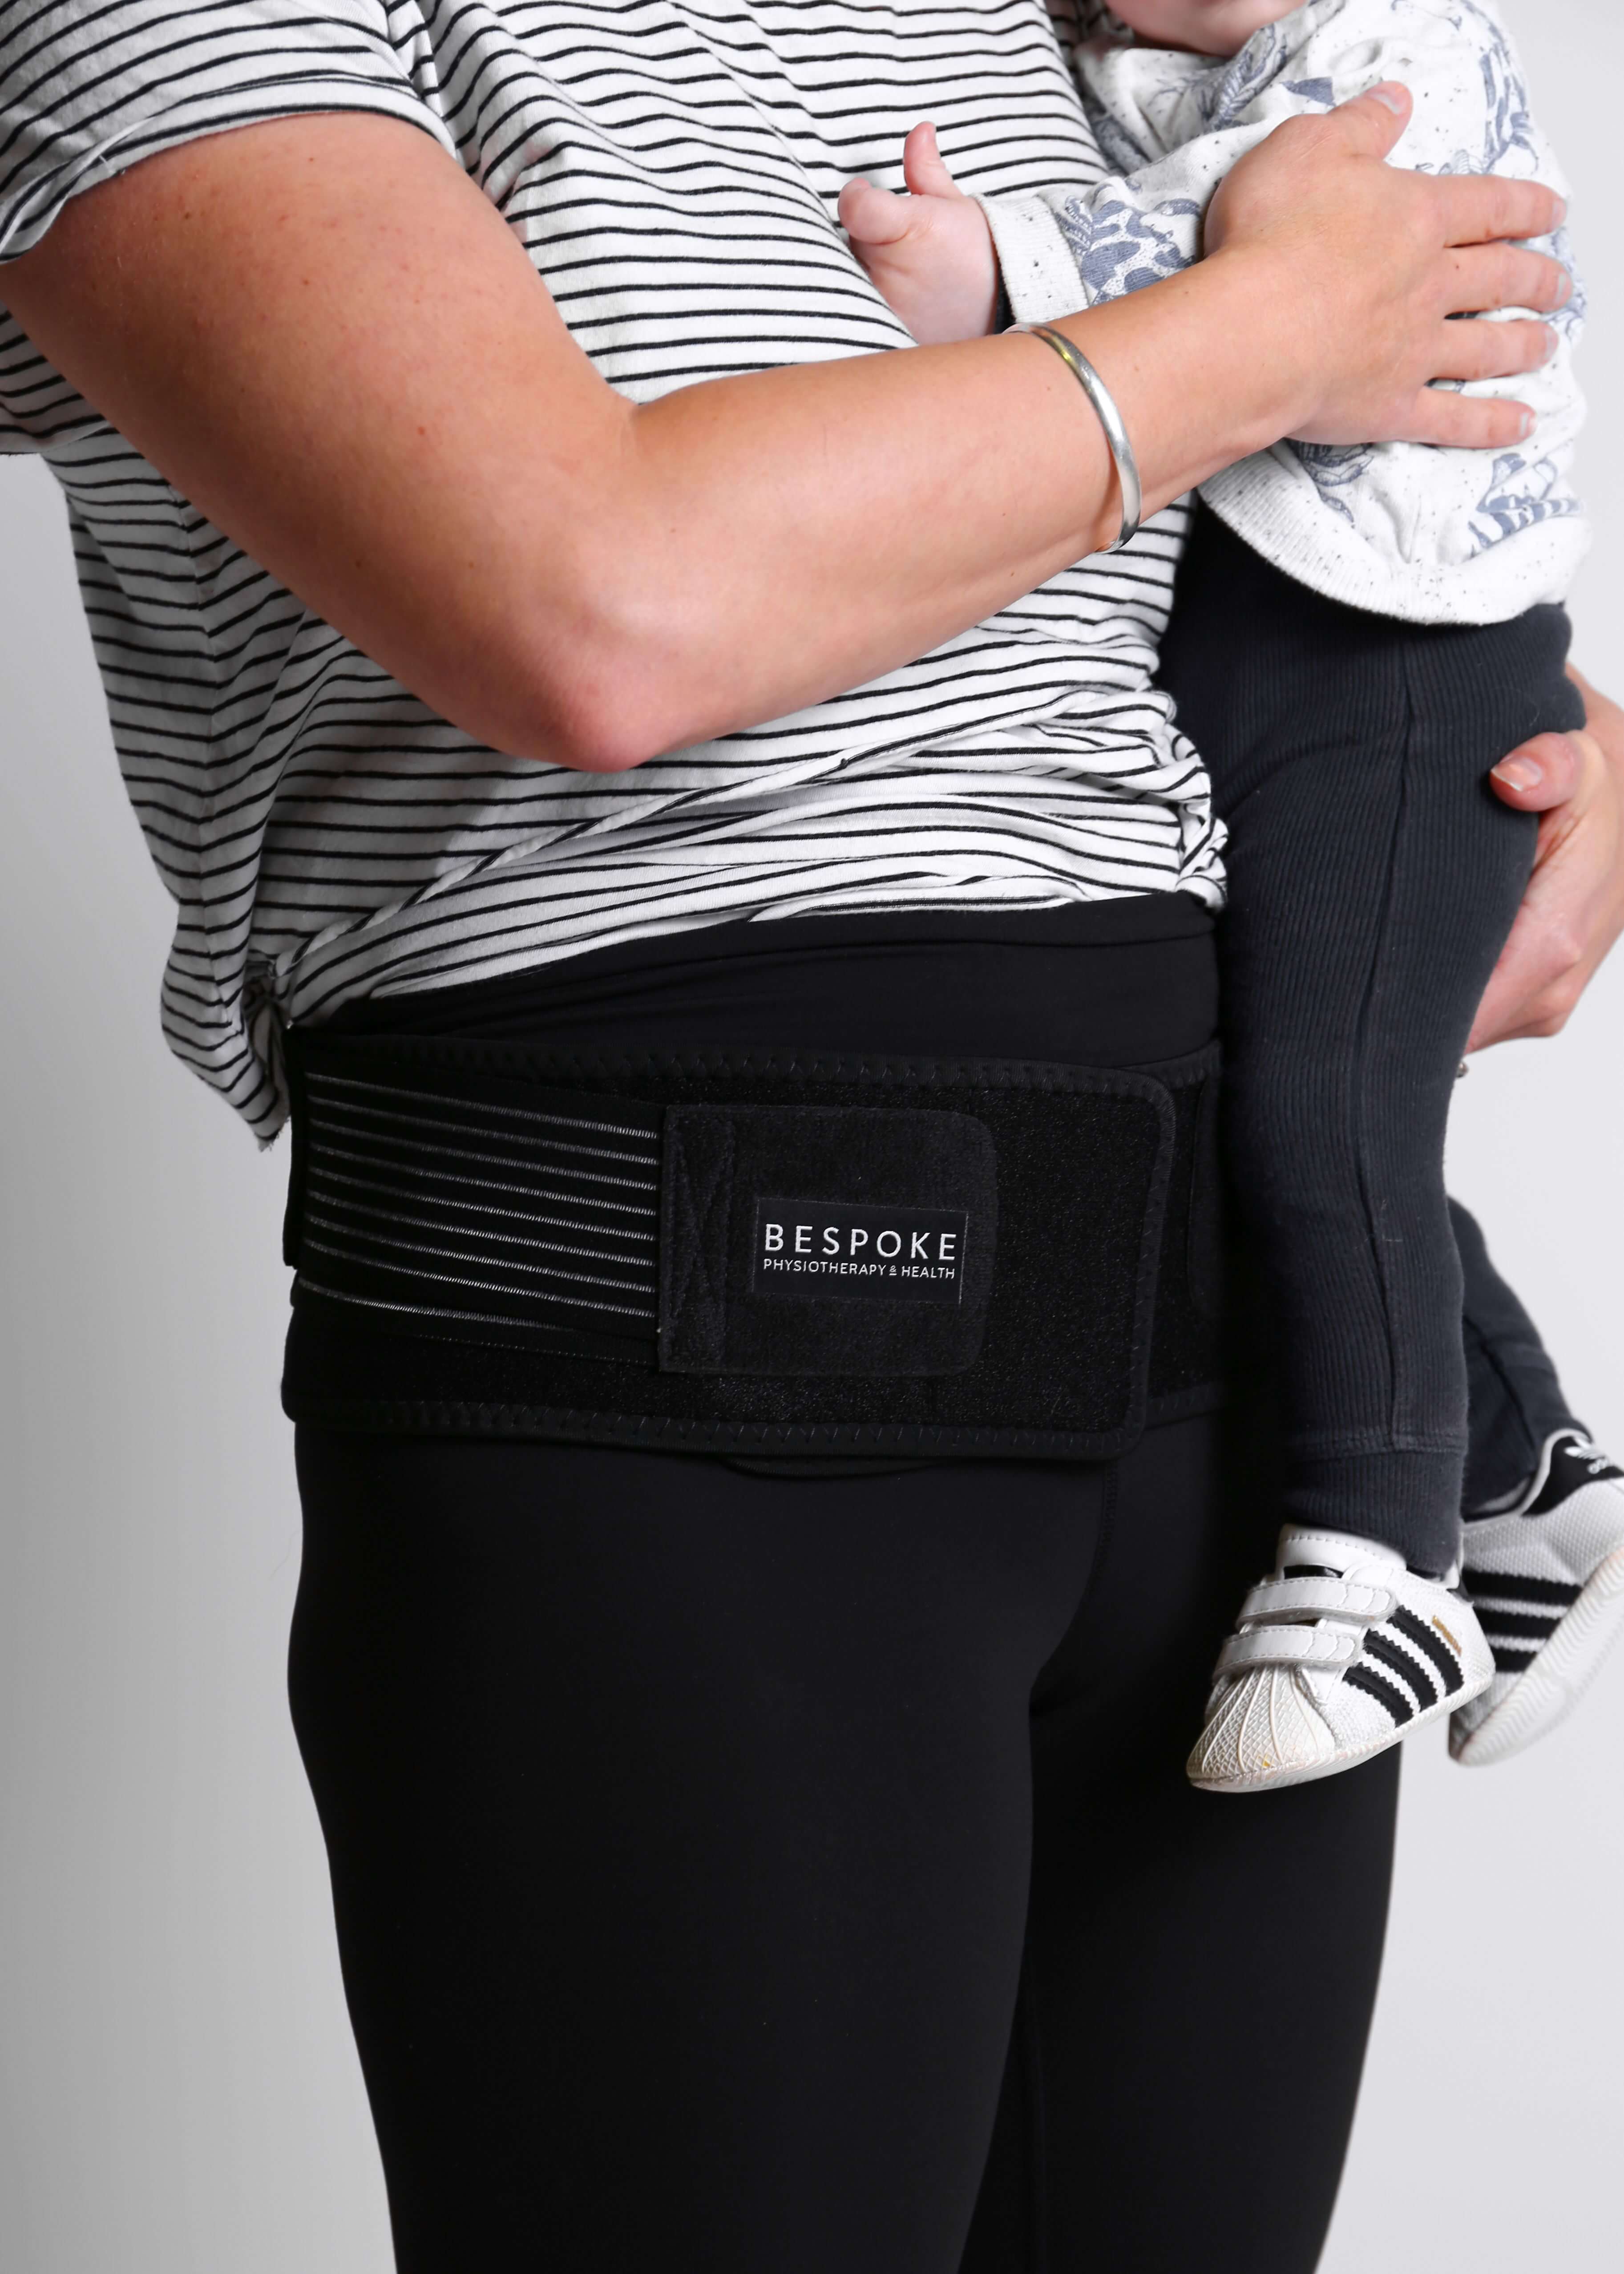 Relieve - SIJ Pregnancy support belt